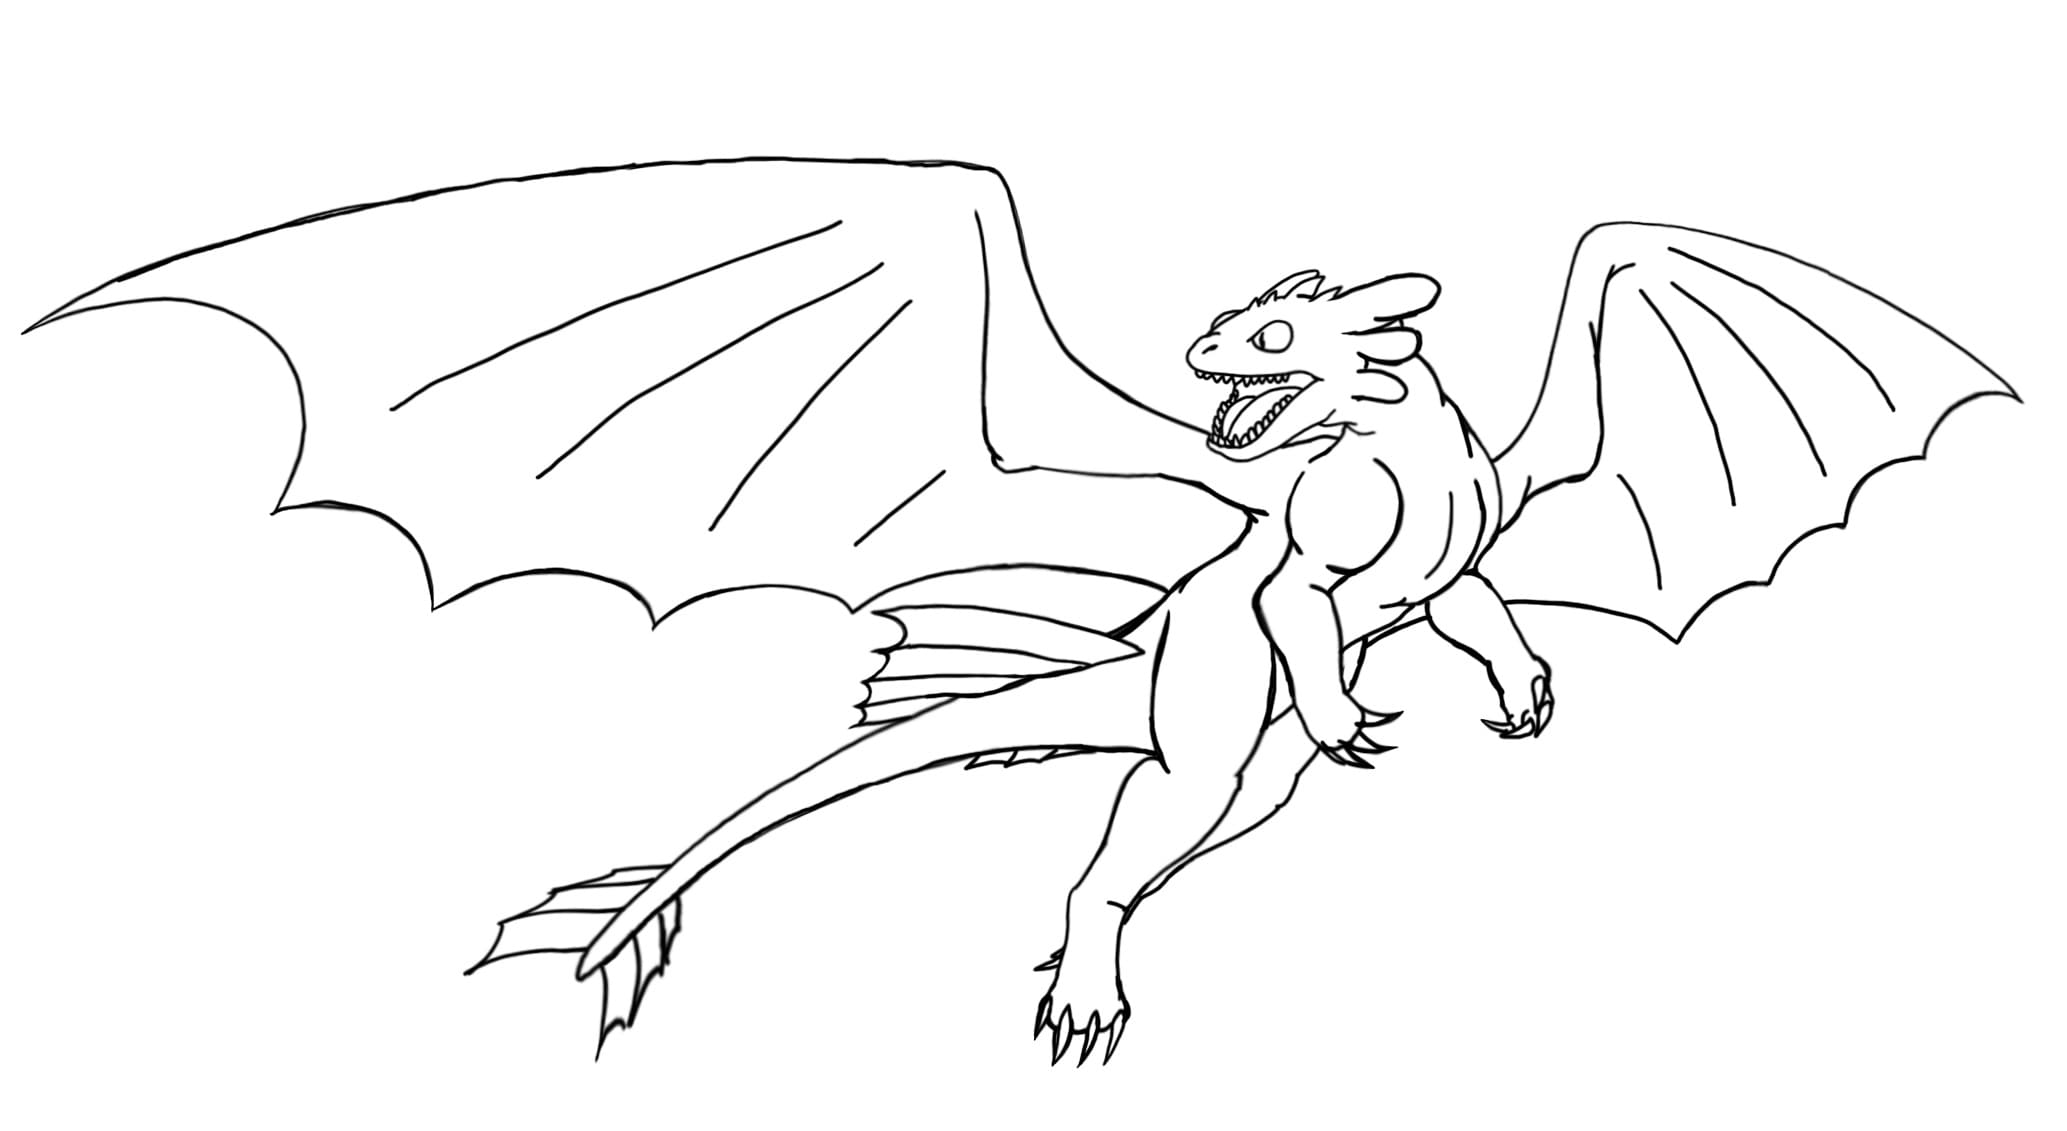 Toothless 19 från How to Train Your Dragon målarbok för att skriva ut och färglägga